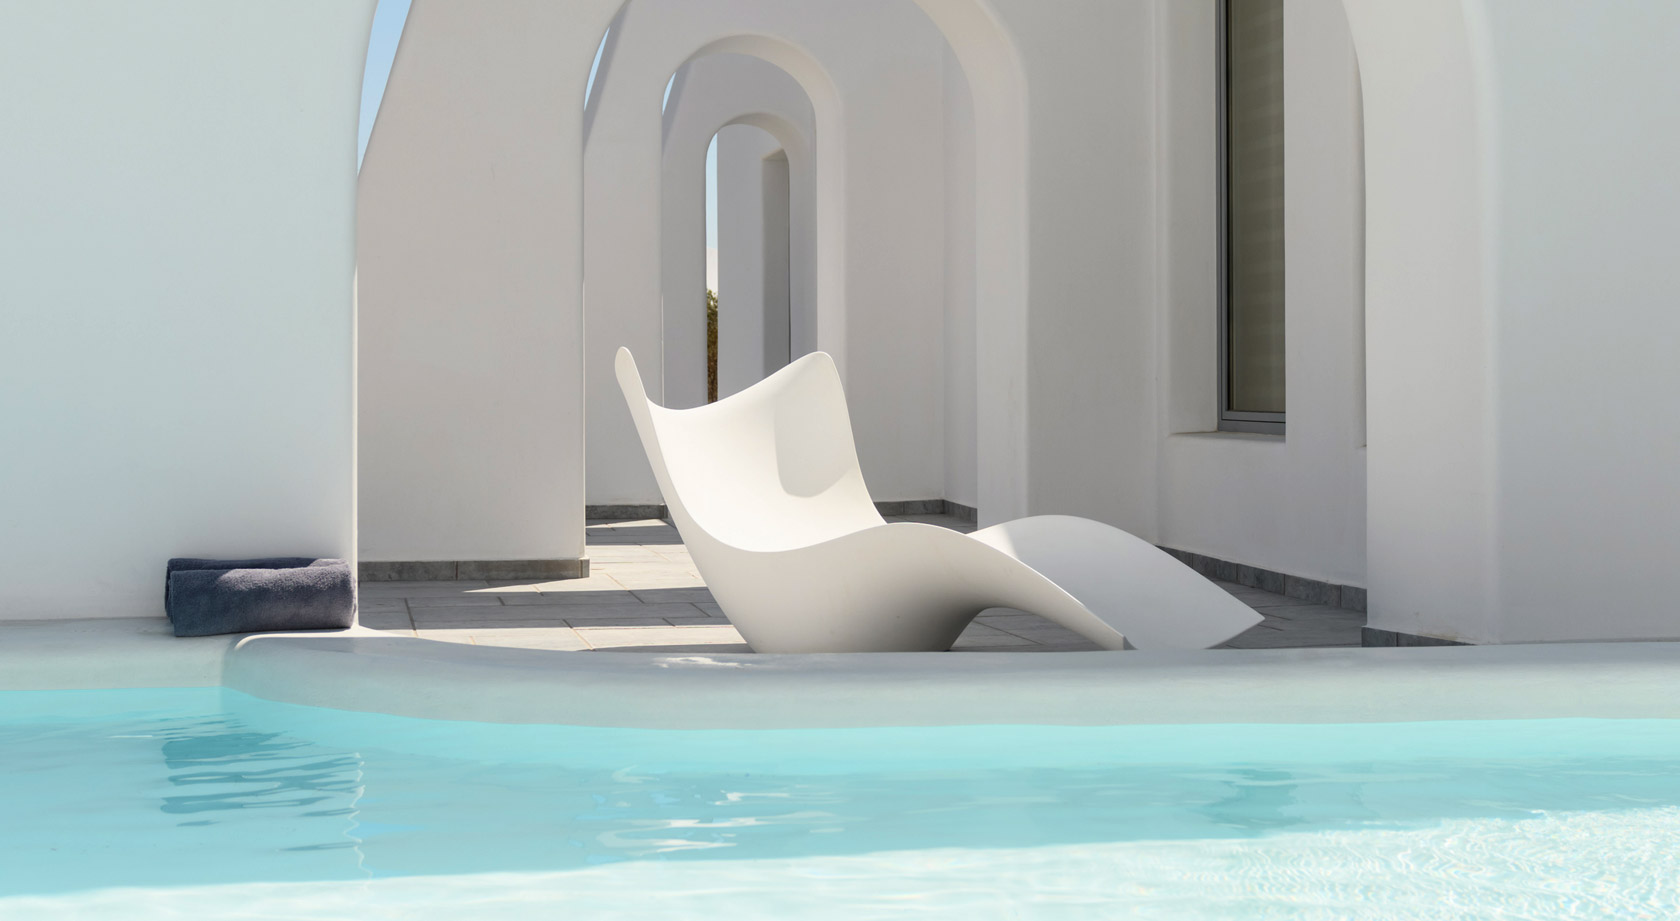 Antoperla Luxury Hotel & Spa in Santorini Greece